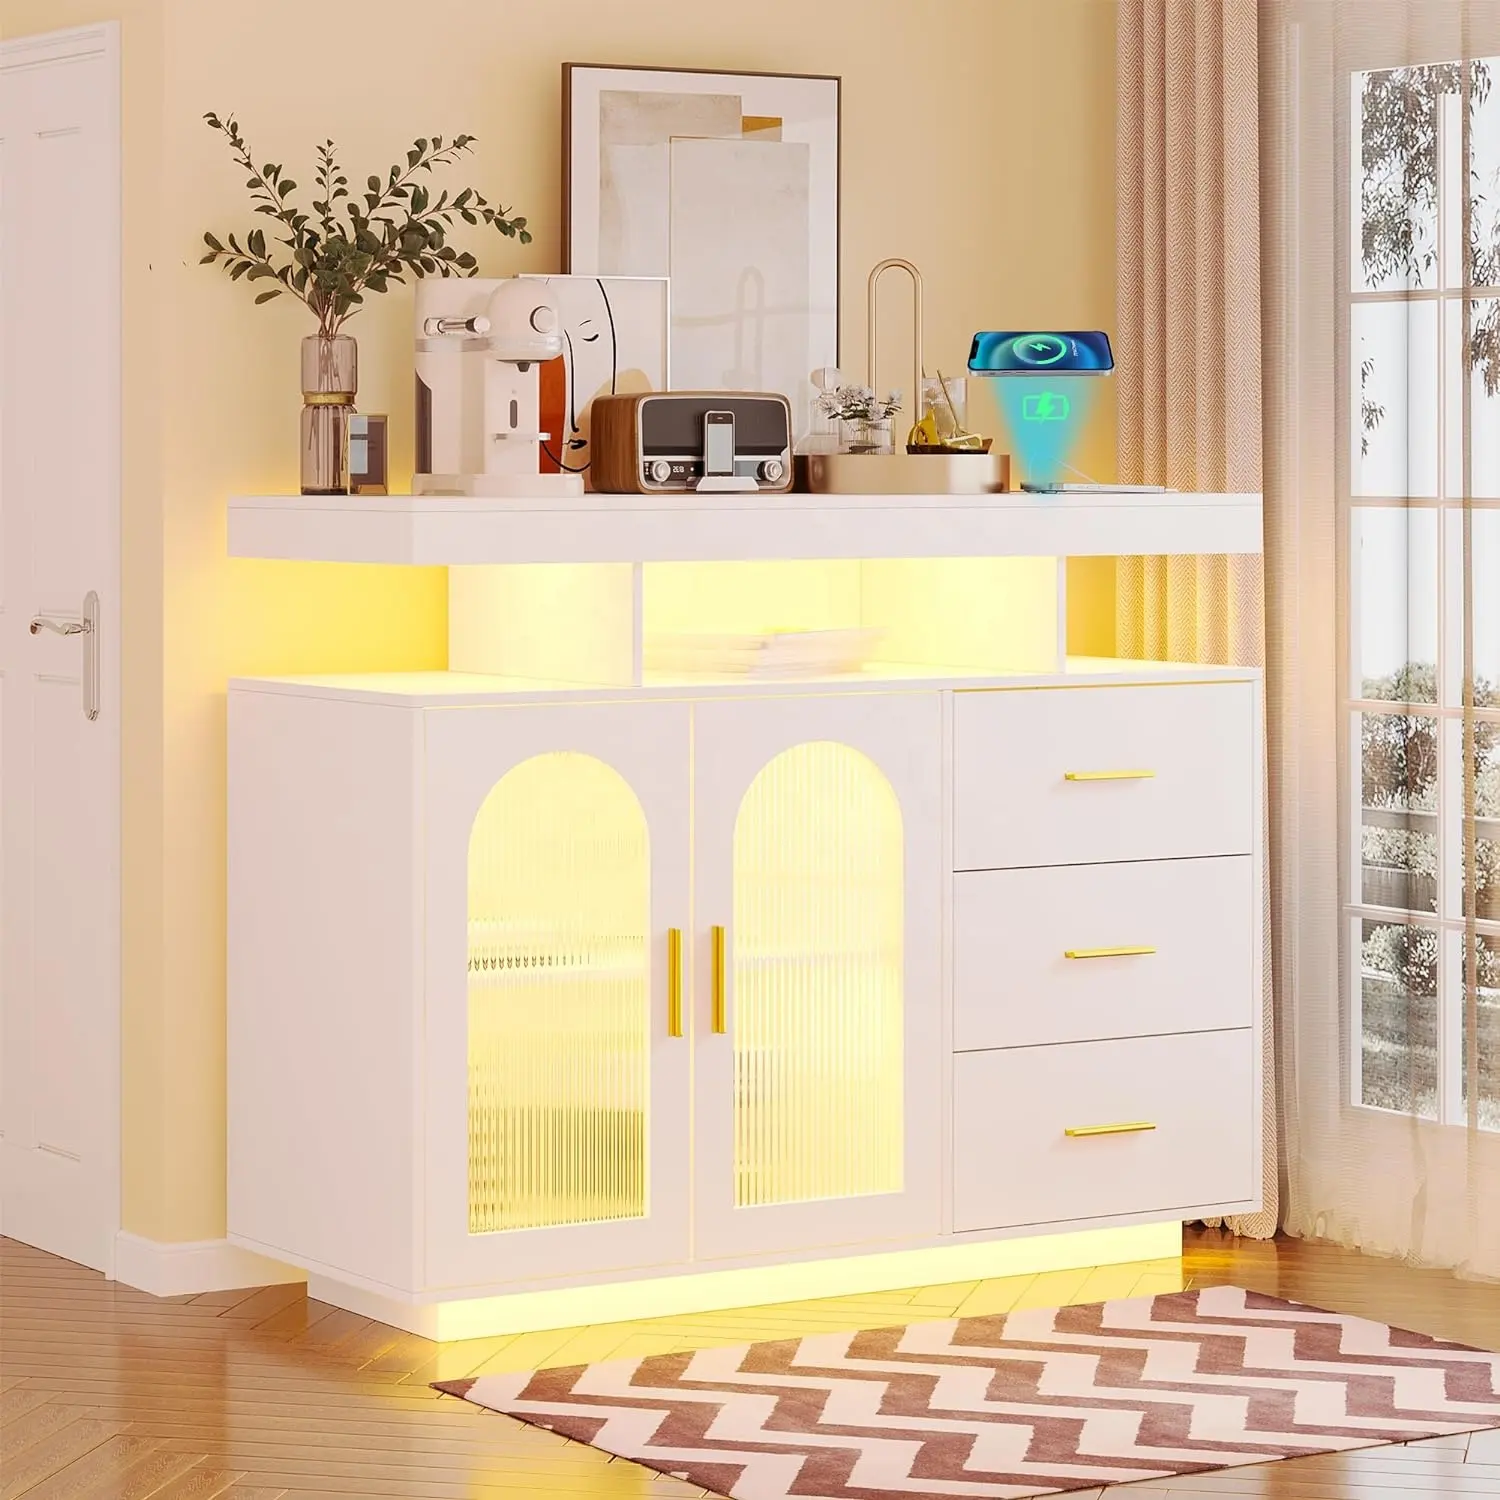 Armário de acrílico para buffet com luz LED inteligente Nova, porta multifuncional, armário lateral com estação de carregamento, para sala de estar